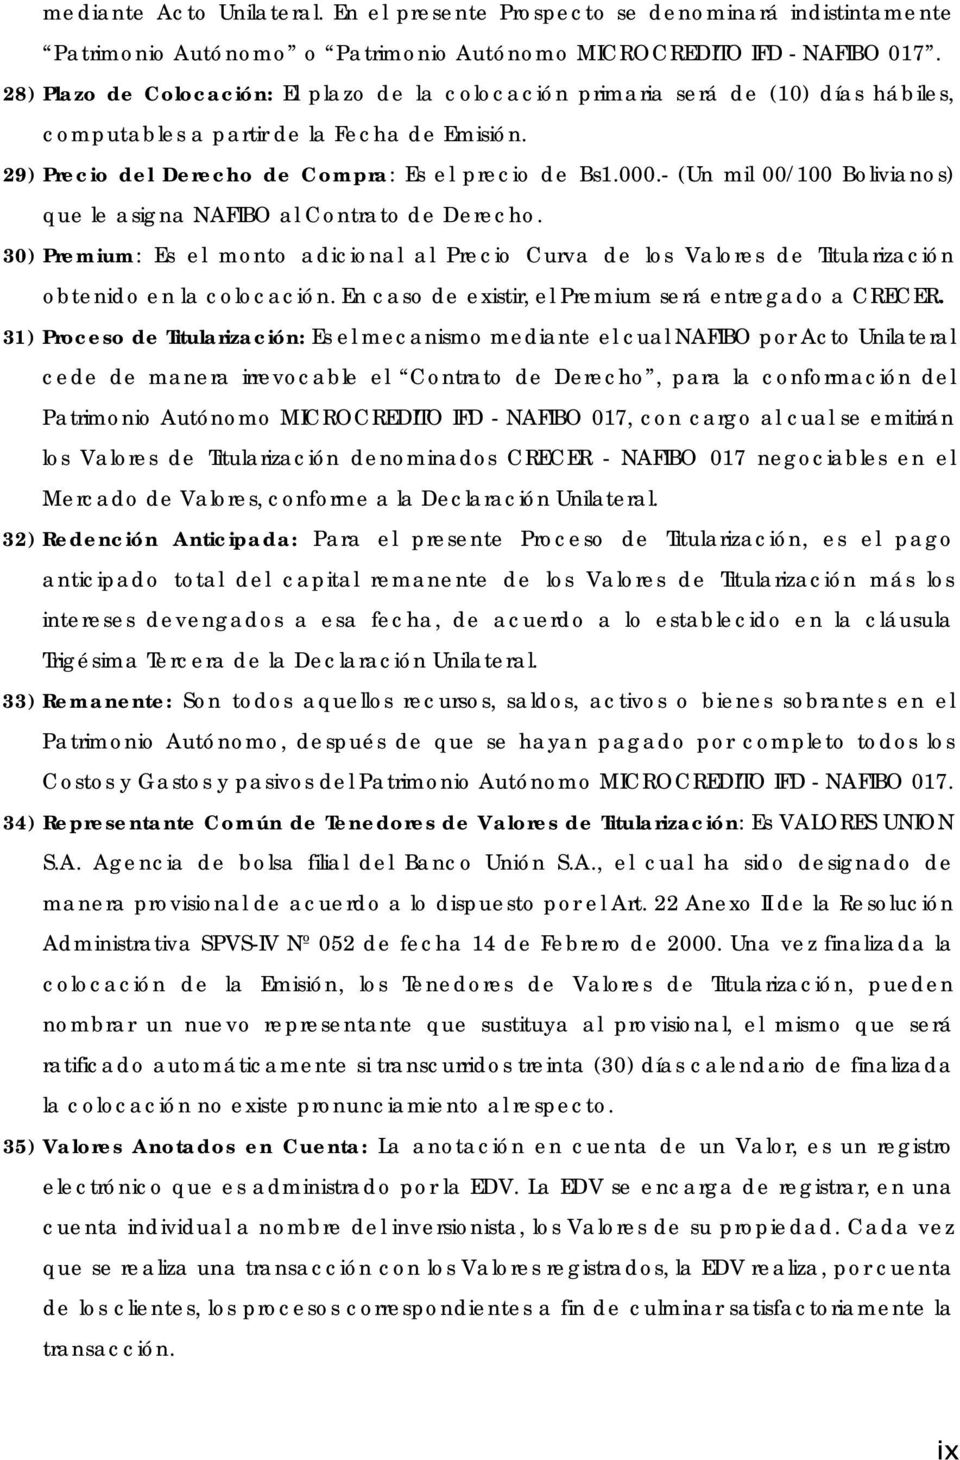 - (Un mil 00/100 Bolivianos) que le asigna NAFIBO al Contrato de Derecho. 30) Premium: Es el monto adicional al Precio Curva de los Valores de Titularización obtenido en la colocación.